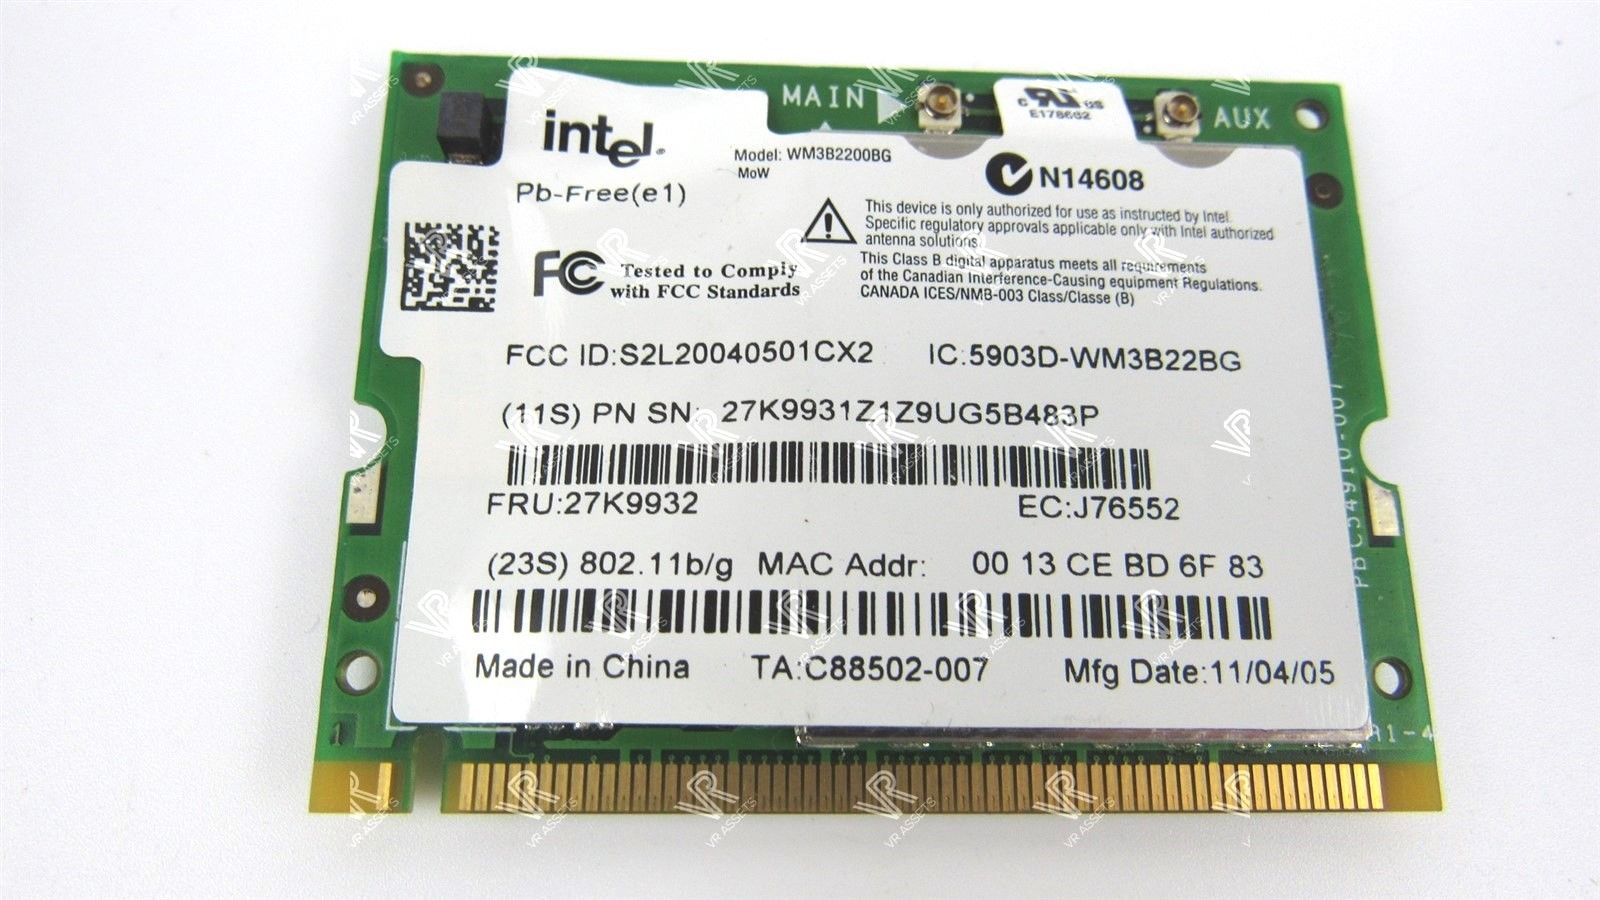 IBM Intel PRO/Wireless 802.11 b/g Mini PCI WiFi Card WM3B22BG 27K9932